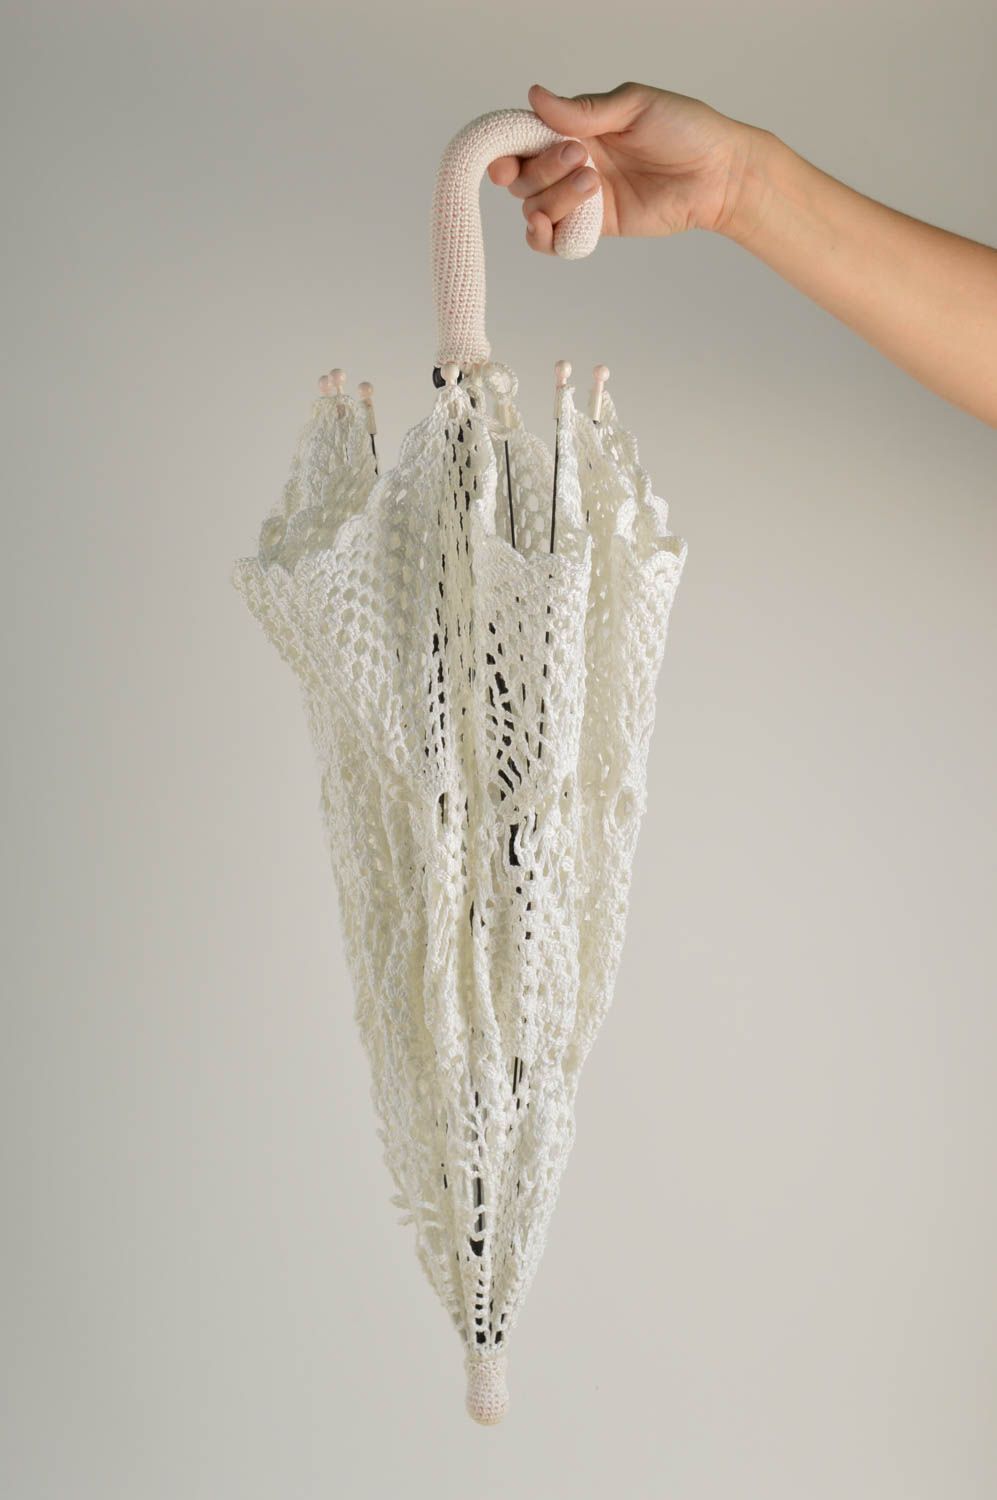 Подарок ручной работы красивый зонтик белый женский зонт вязаный крючком фото 2